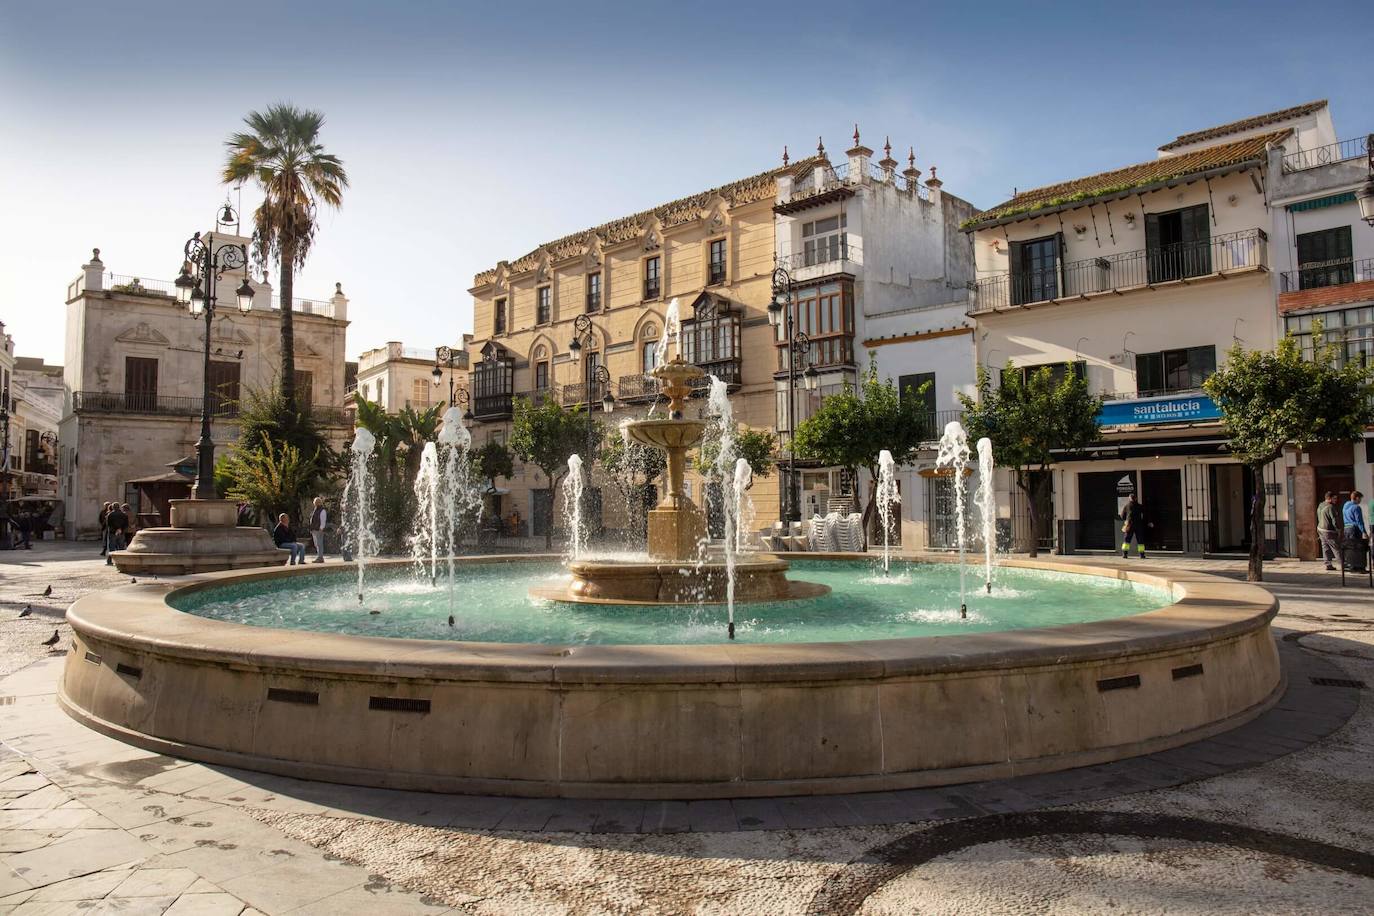 Los pueblos de Cádiz: guía de viaje de los rincones más bonitos de la provincia gaditana